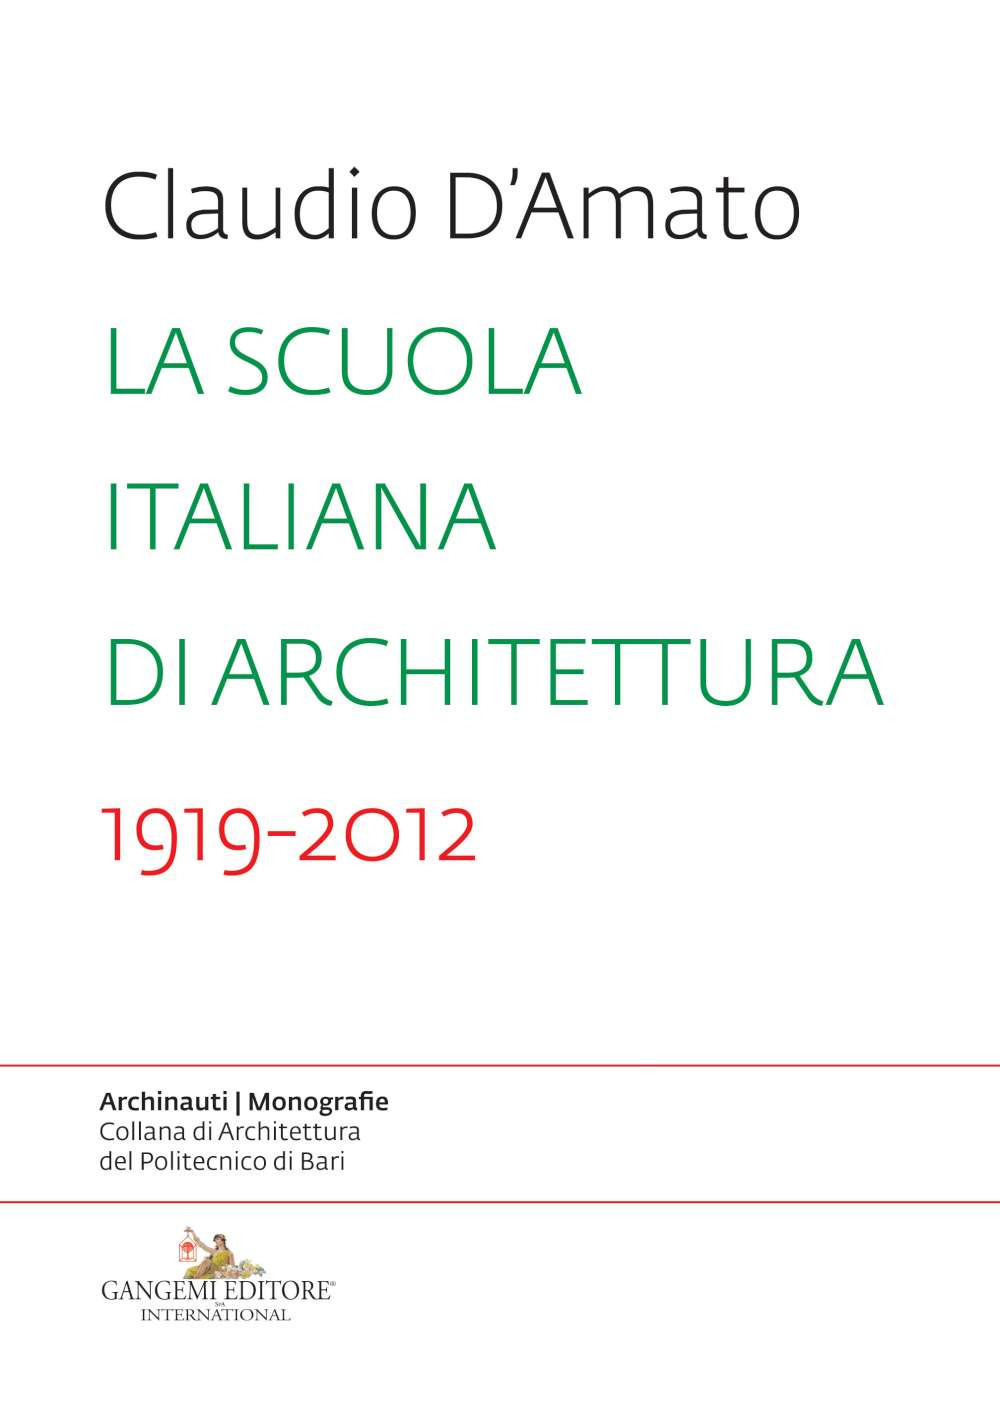 Image of La scuola italiana di architettura 1919-2012. Saggio sui modelli didattici e le loro trasformazioni nell'insegnamento dell'architettura